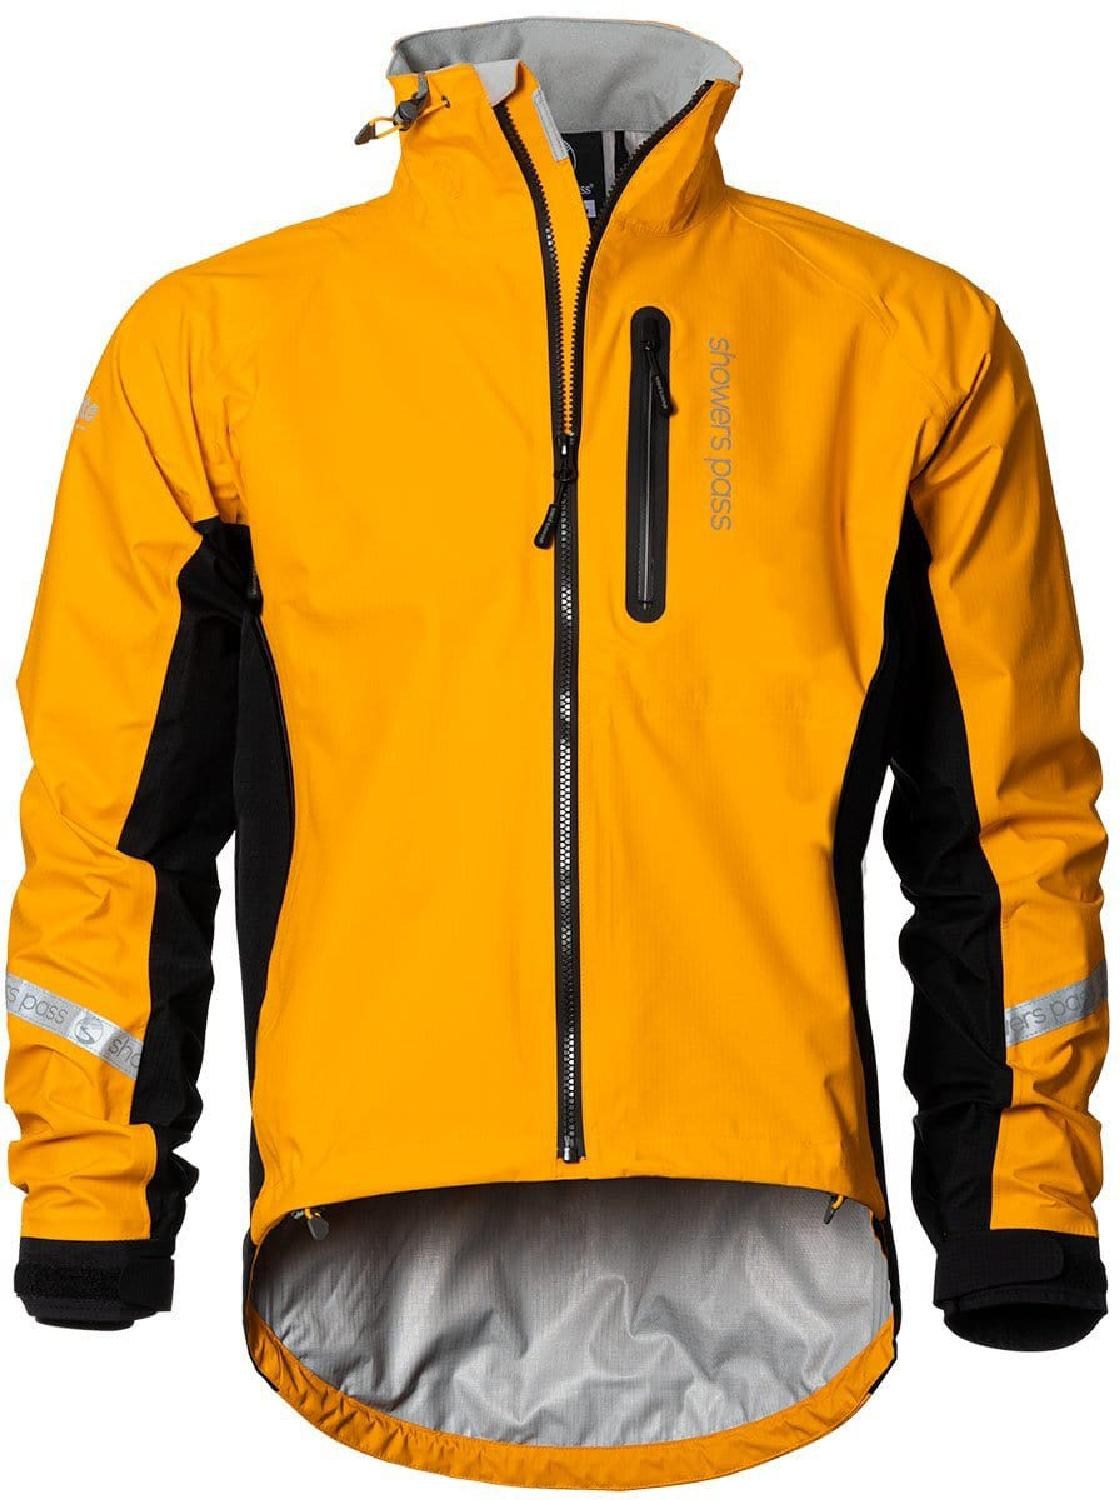 Велосипедная куртка Elite 2.1 — мужская Showers Pass, оранжевый